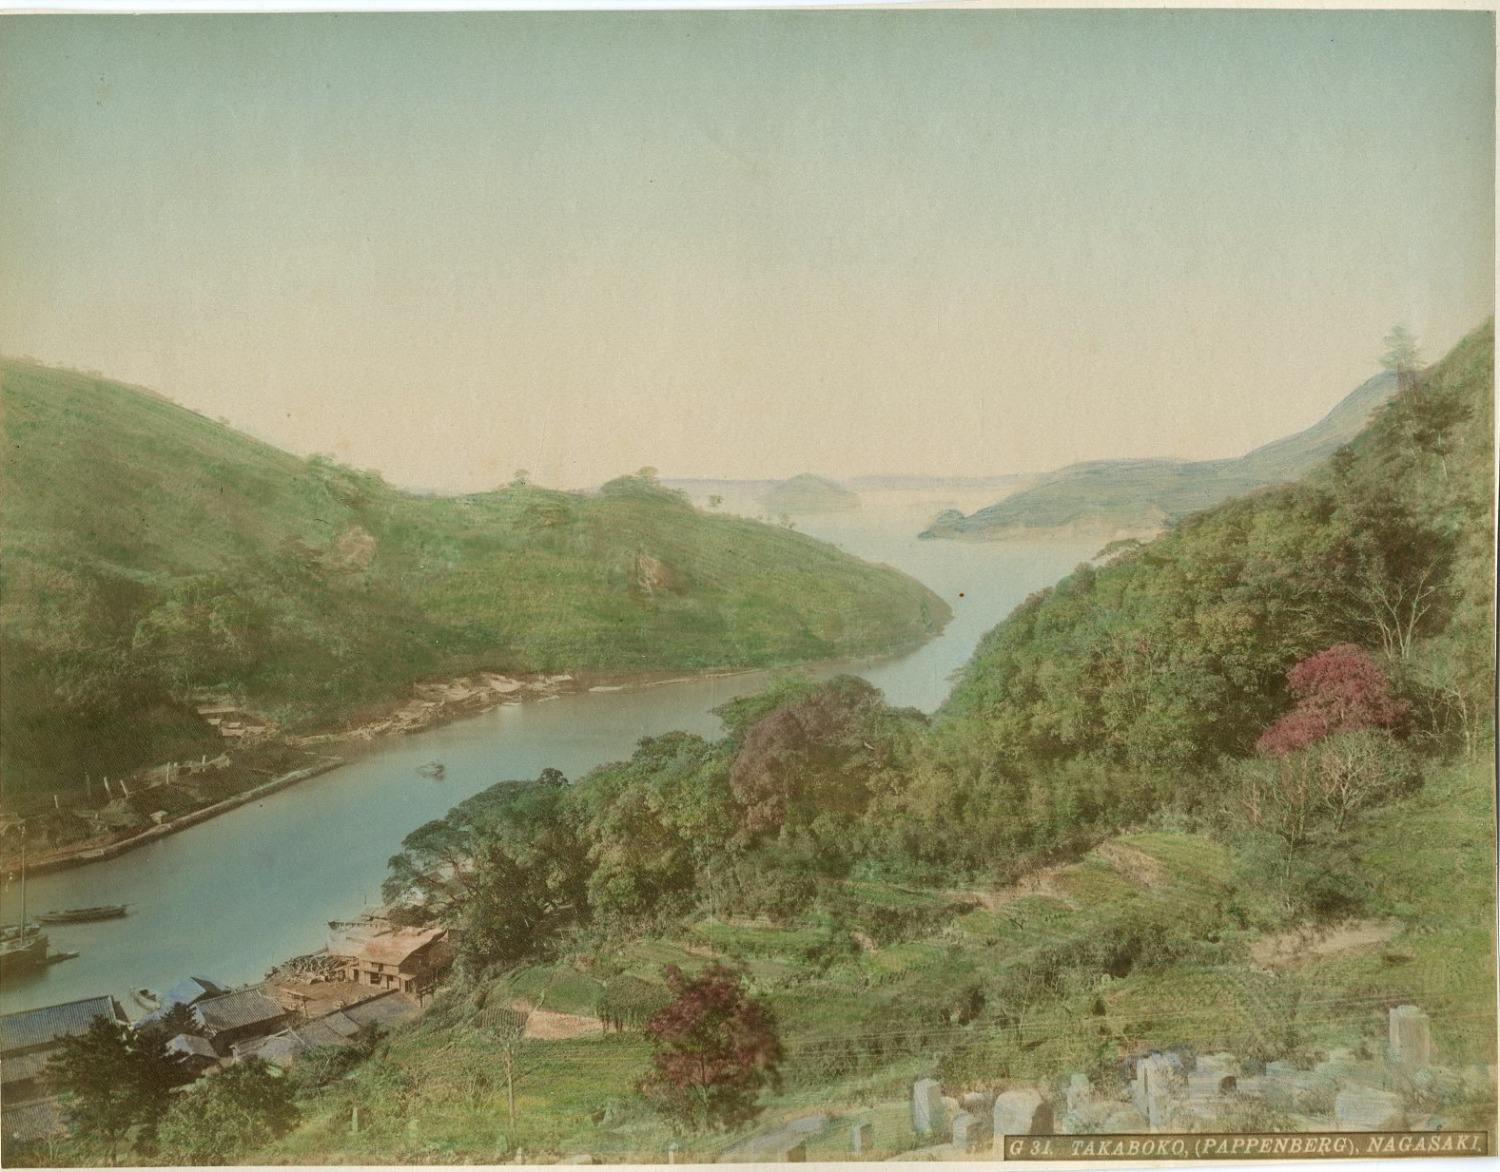 Japan, Takaboko, Nagasaki Japan. Vintage Albumen Print. Water Albumin Print